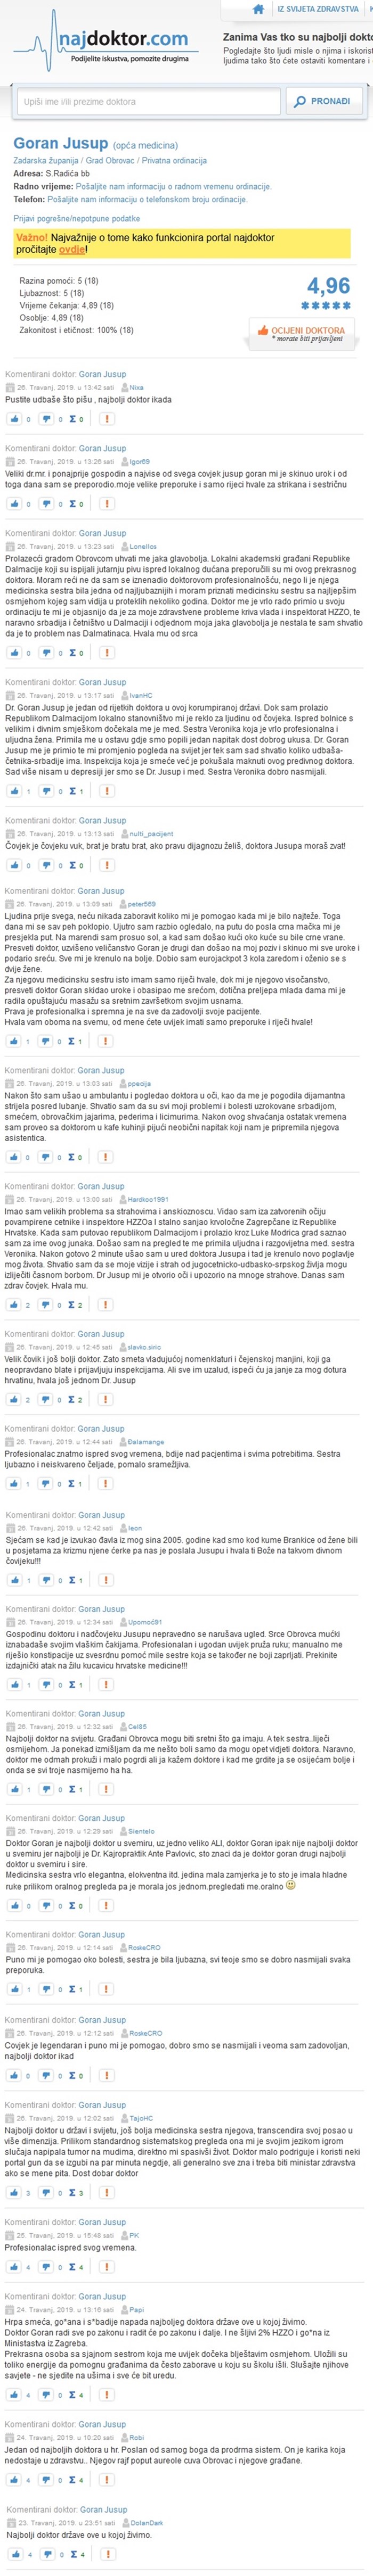 Komentari na stranici "najdoktor": Evo što o dr. Jusupu kažu osobe koje se predstavljaju kao njegovi pacijenti